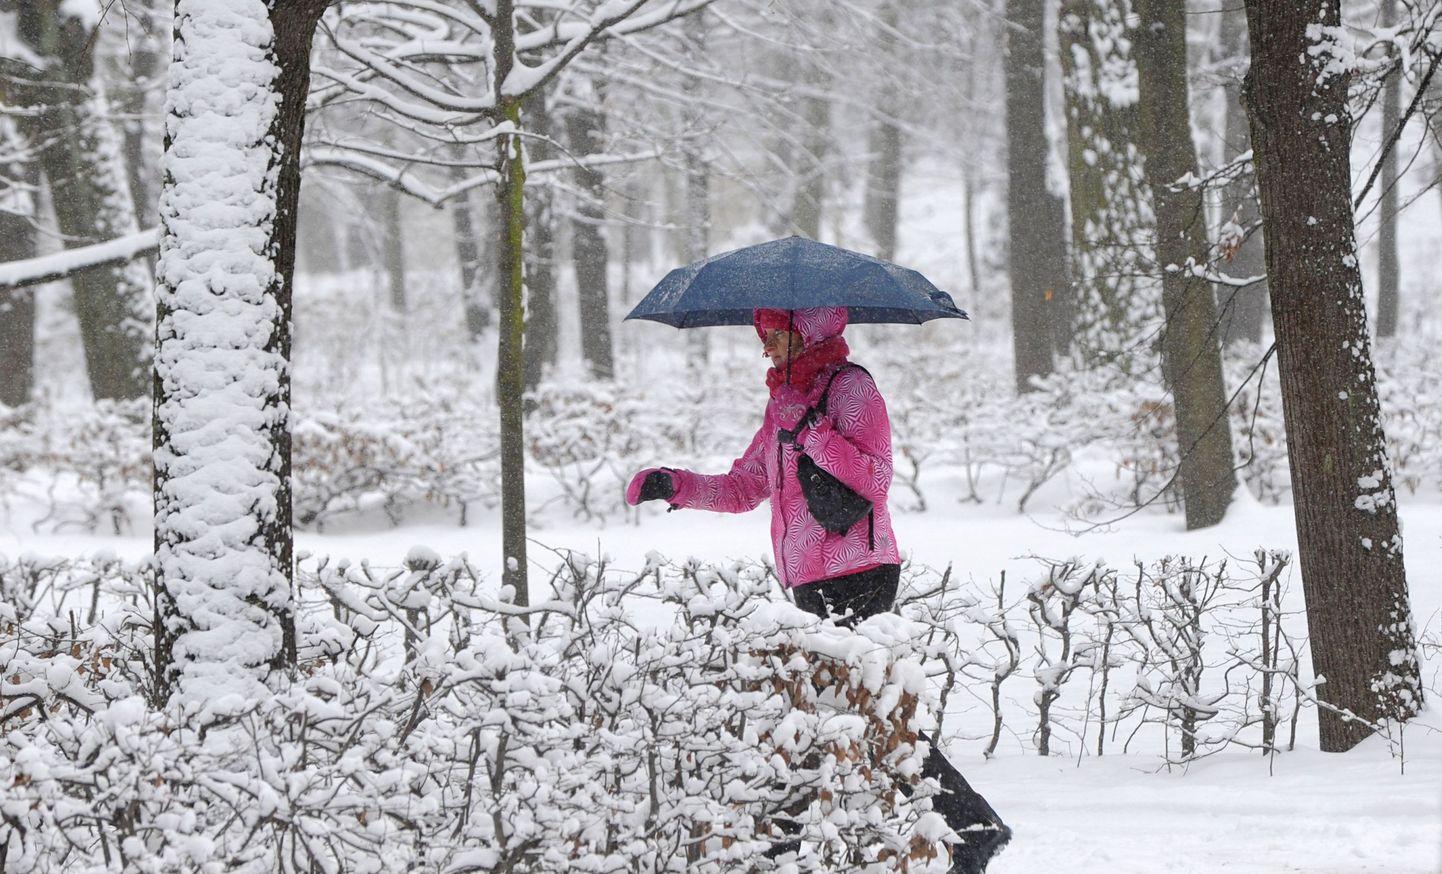 Soome meteoroloogid lubavad reedeks lund